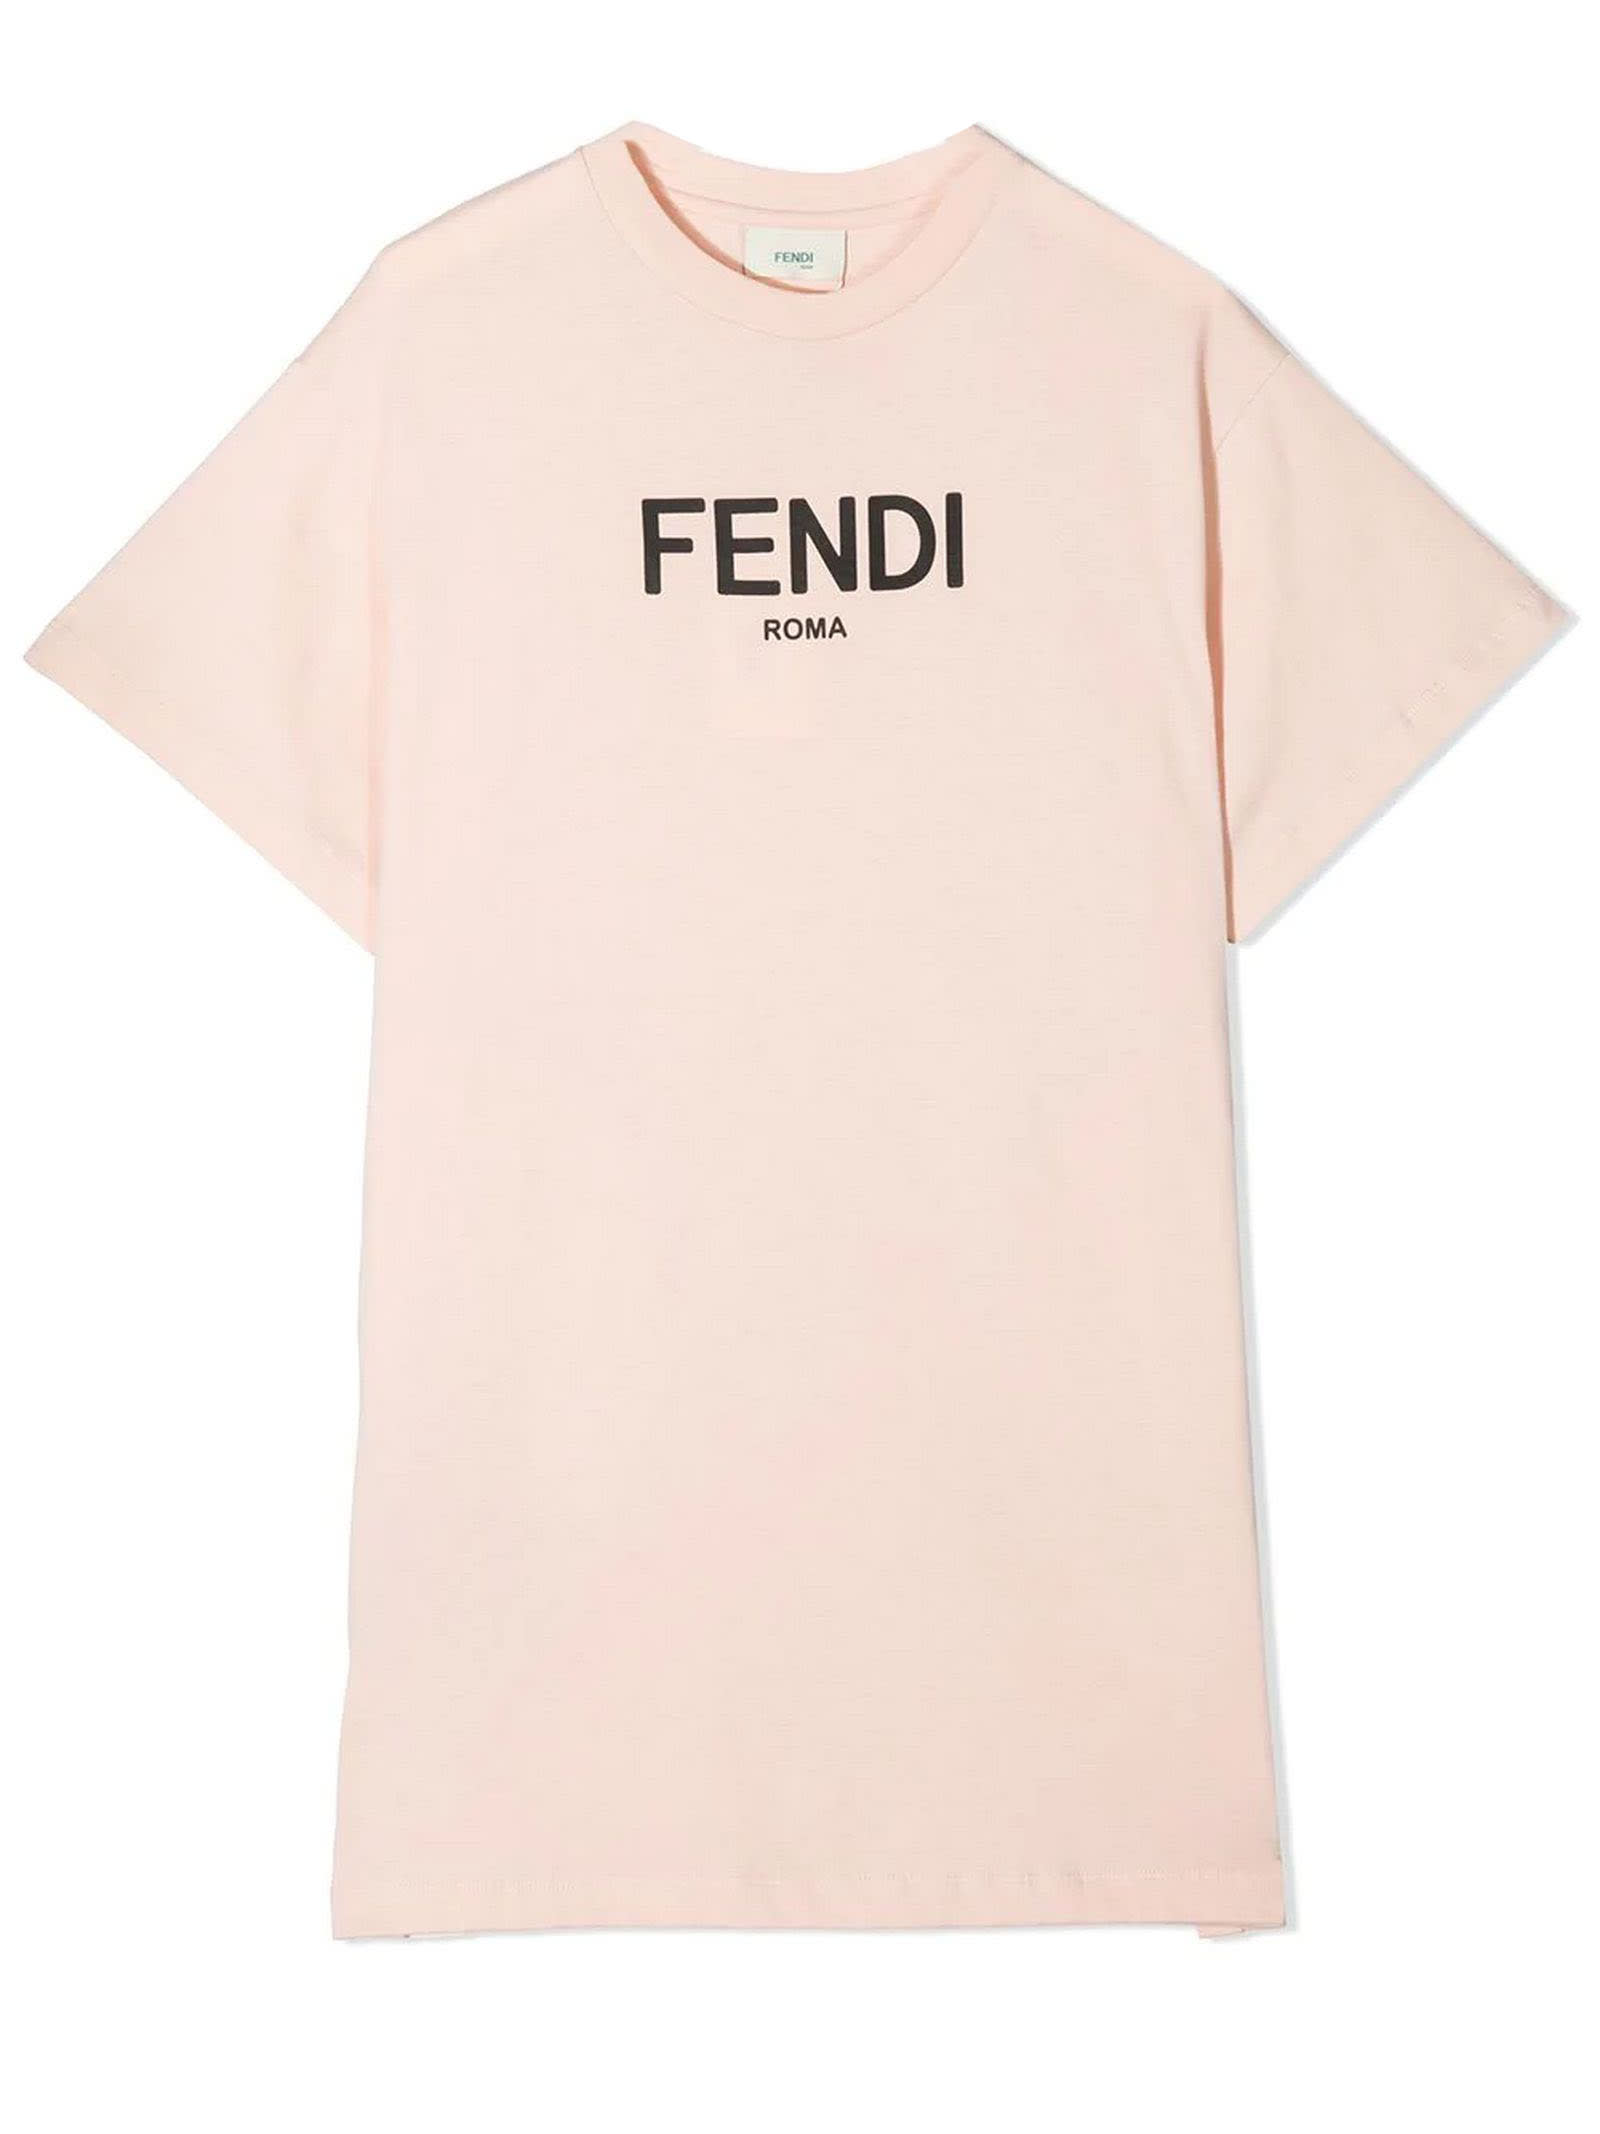 Fendi Pink Cotton T-shirt Dress